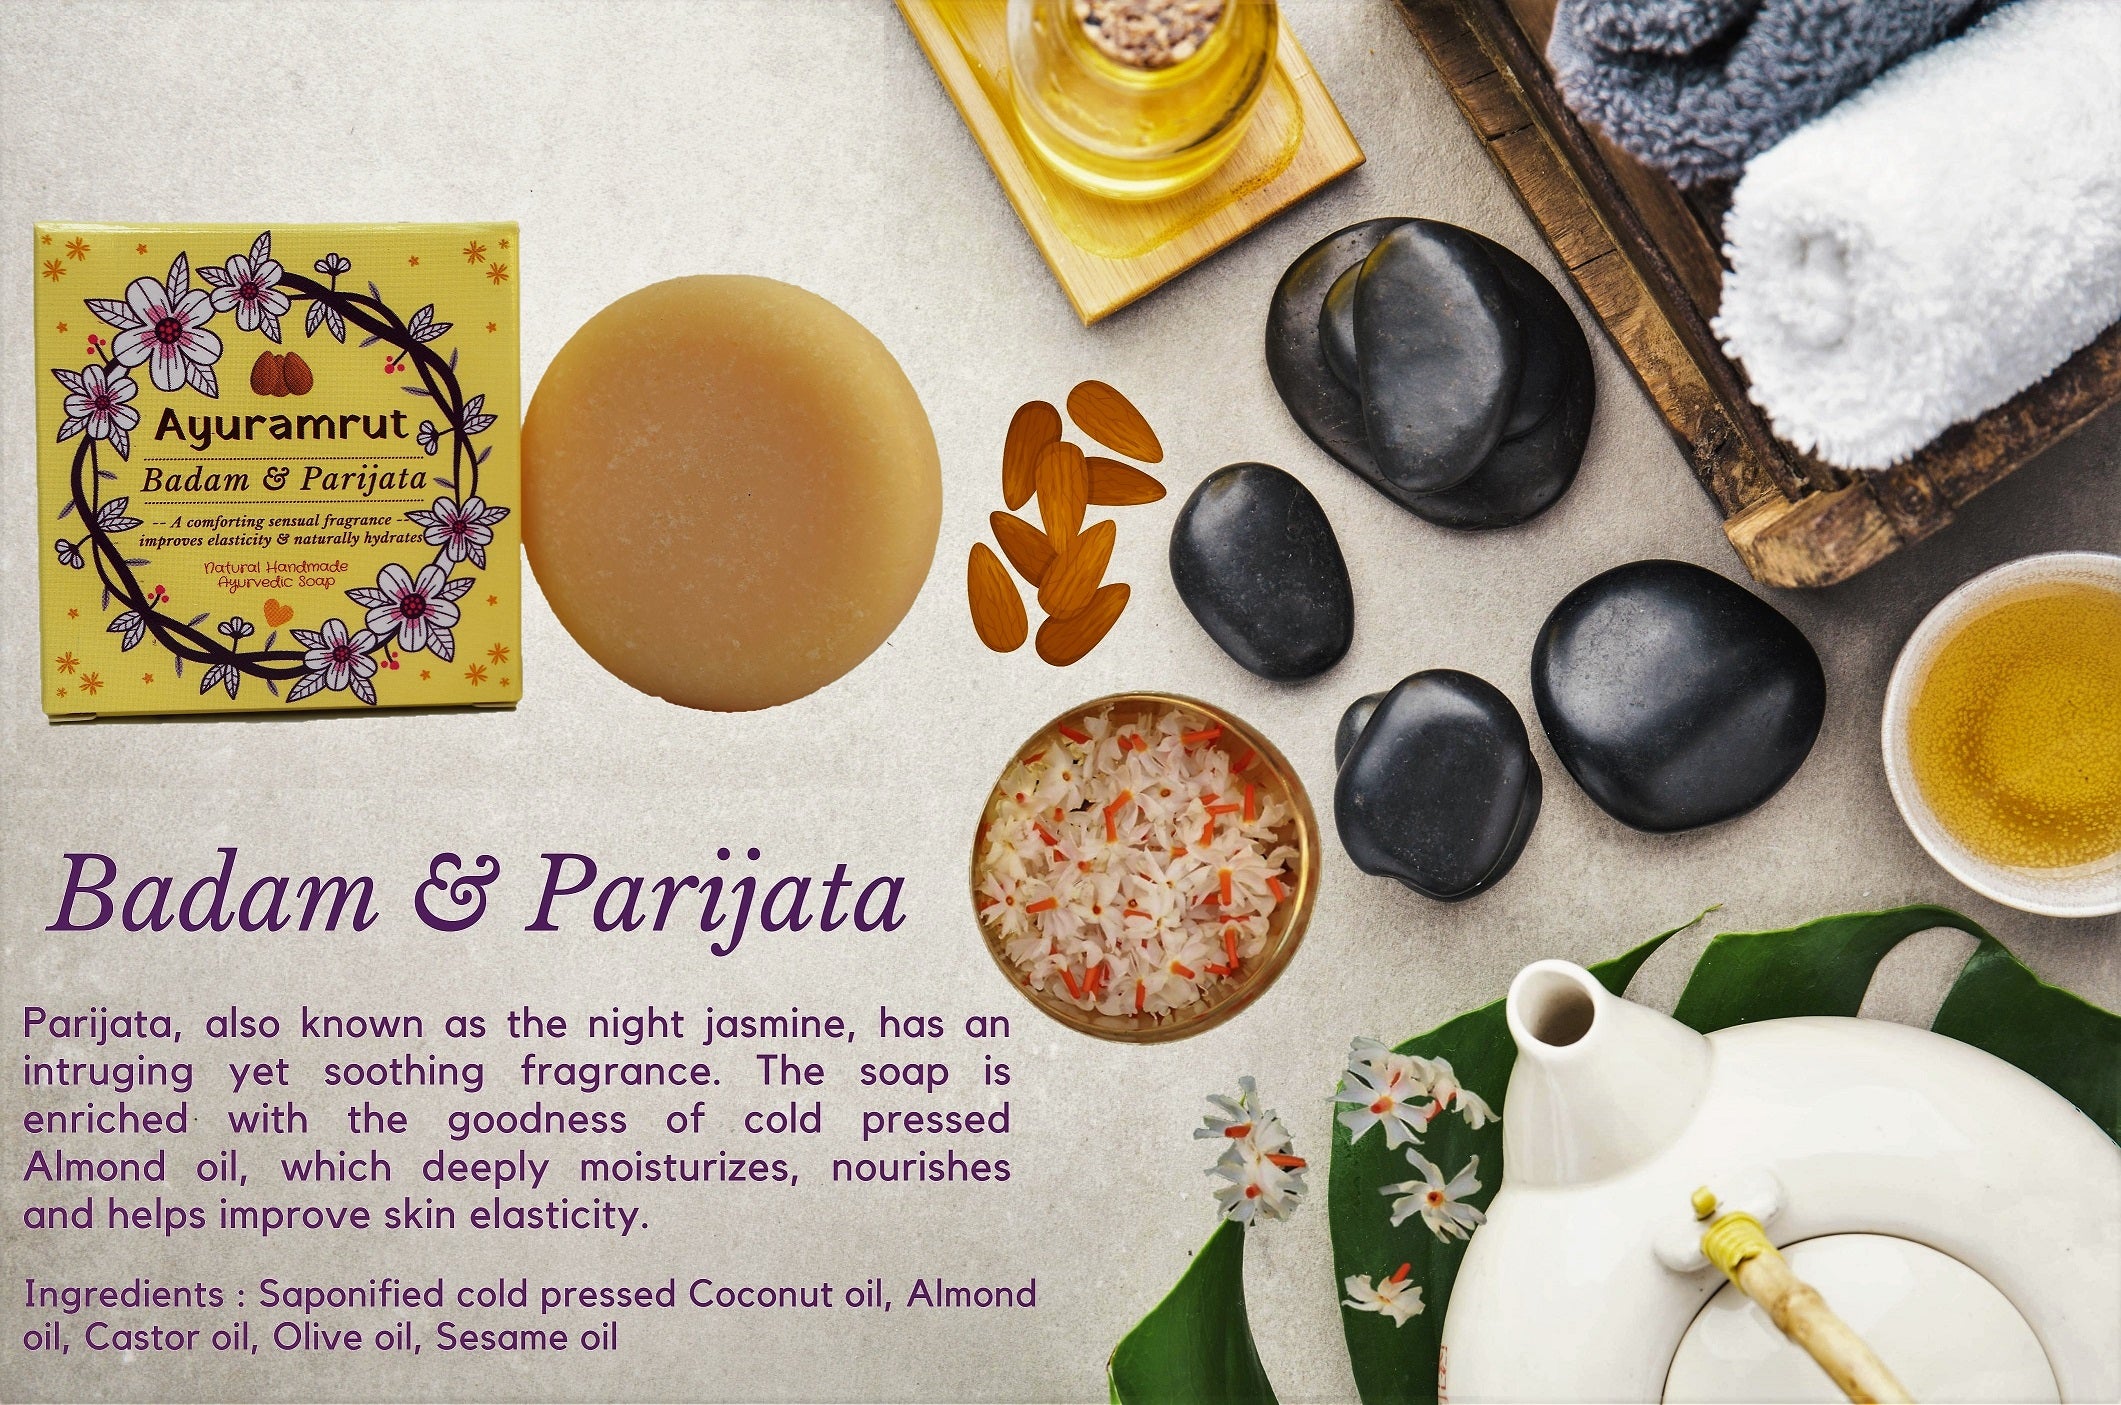 Ayuramrut Badam and Parijata Natural Handmade Ayurvedic Soap (Pack of 4)